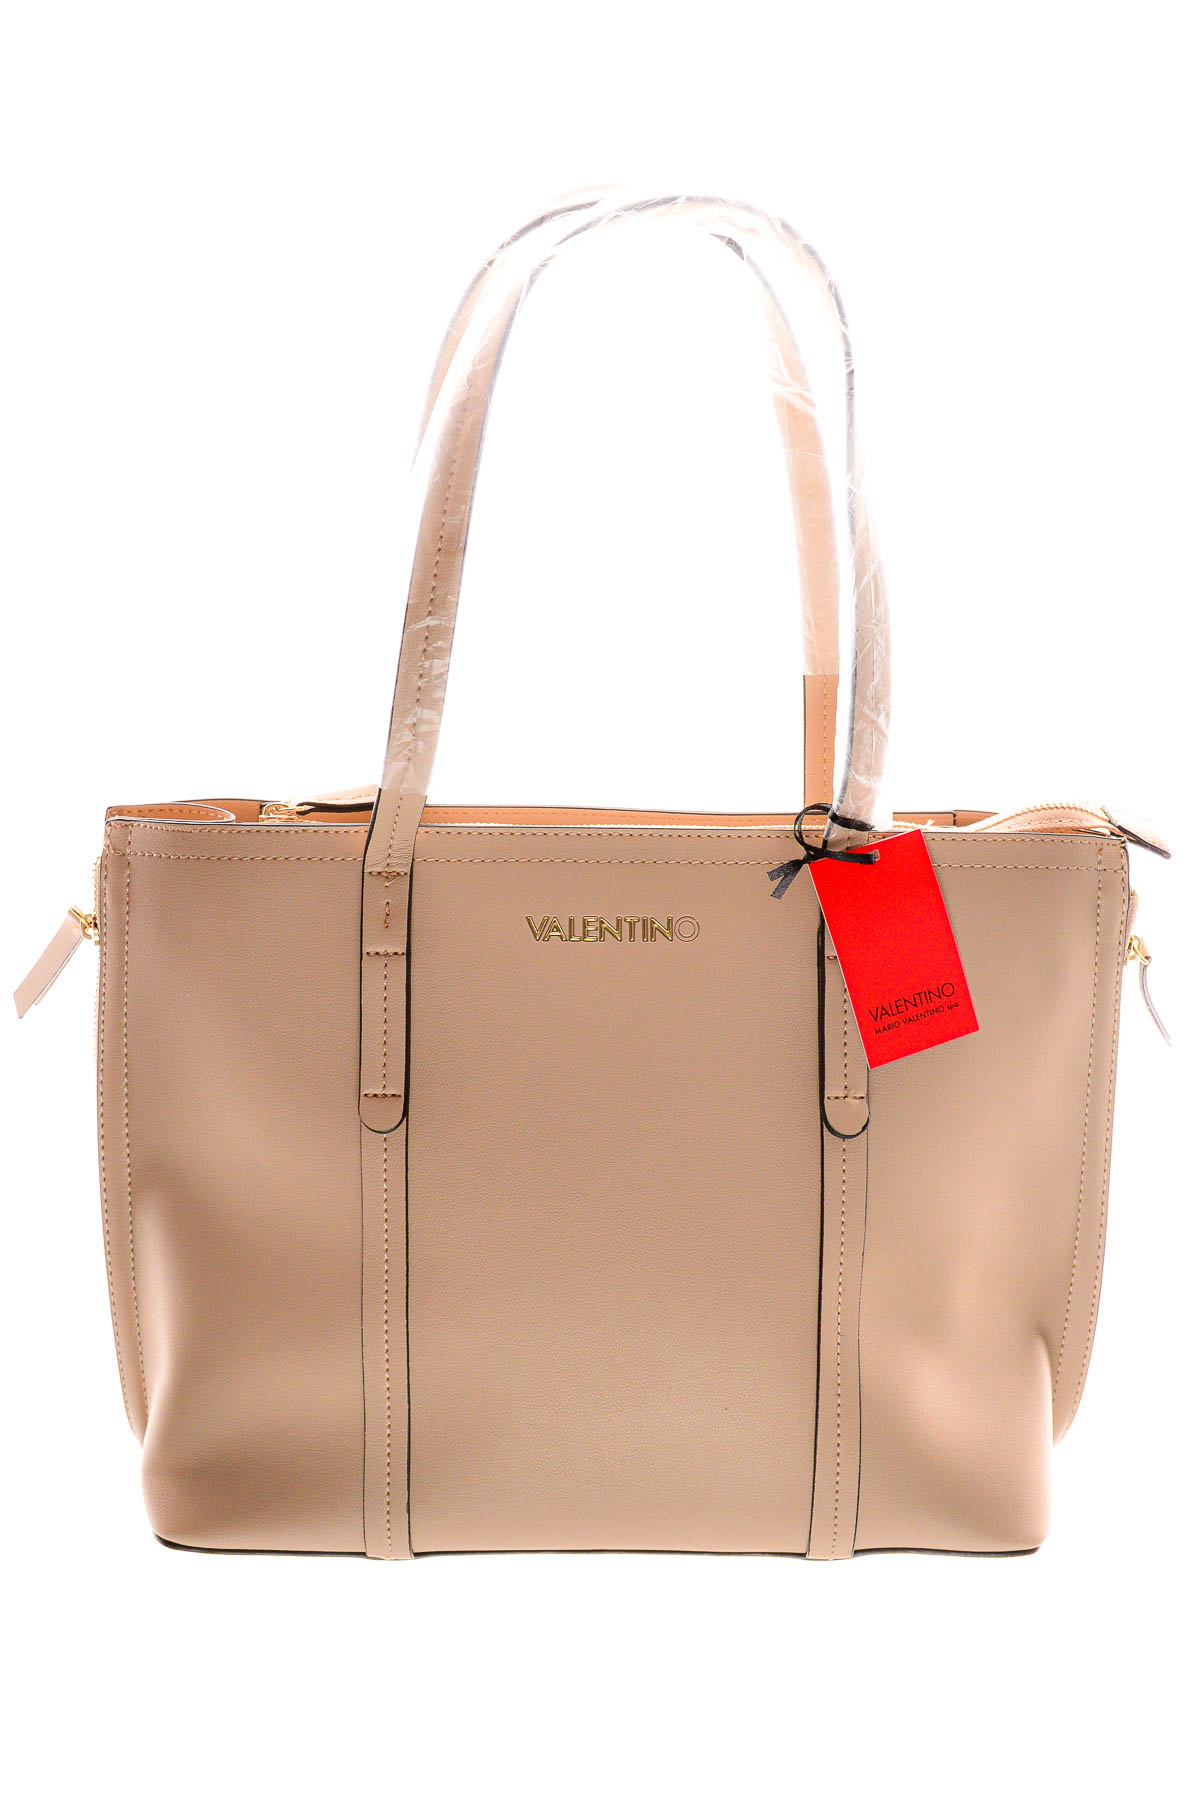 Women's bag - Valentino MARIO VALENTINO SPA - 0